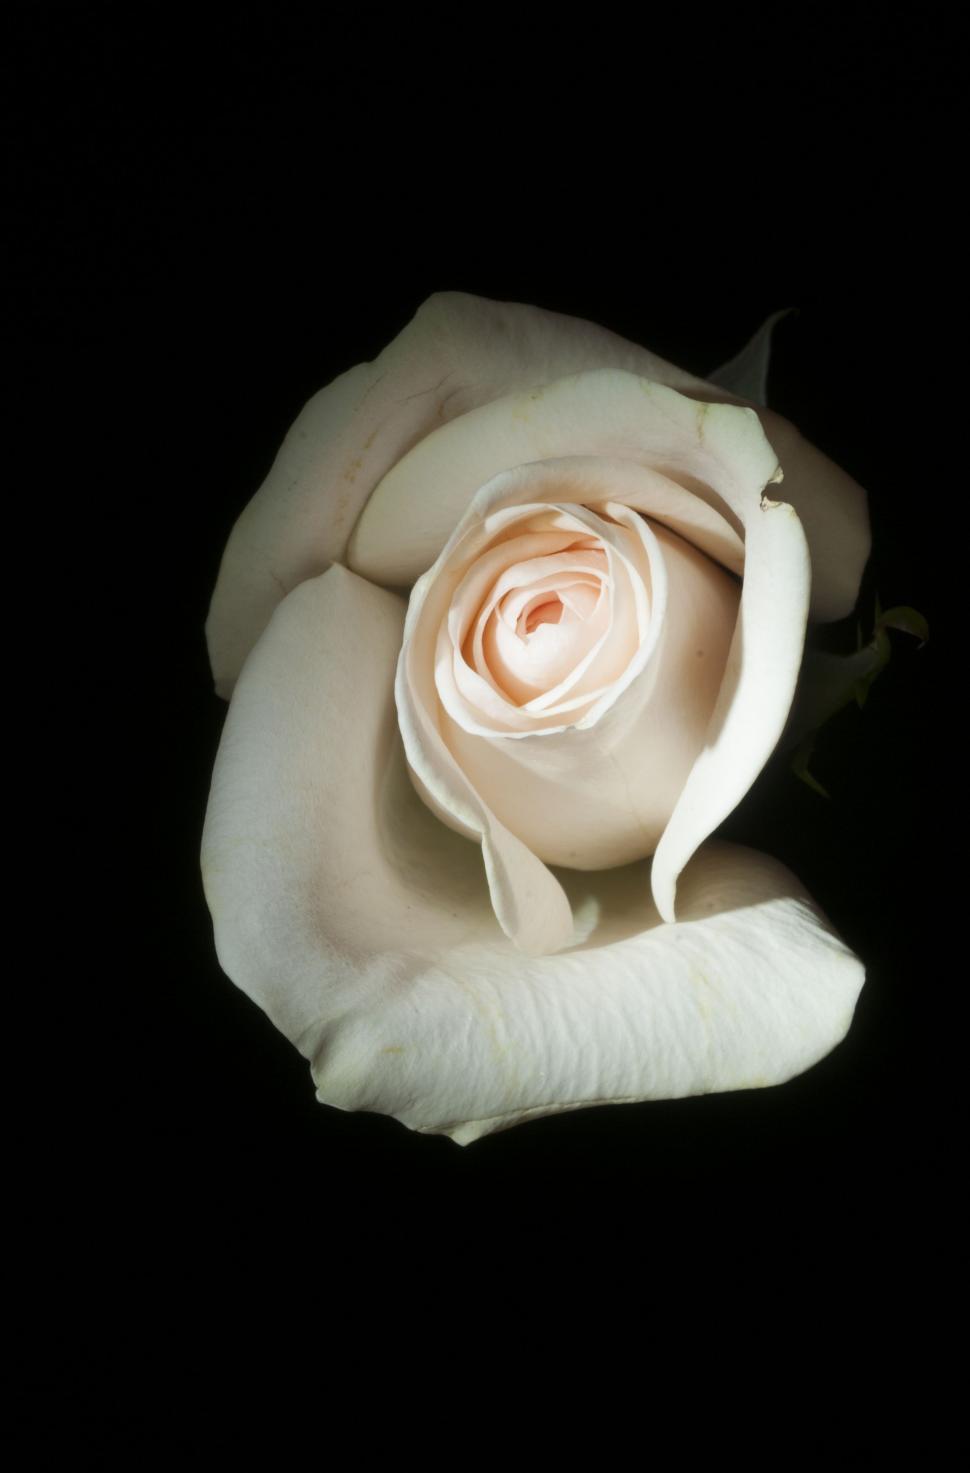 Free Image of White Rose on Black Background 